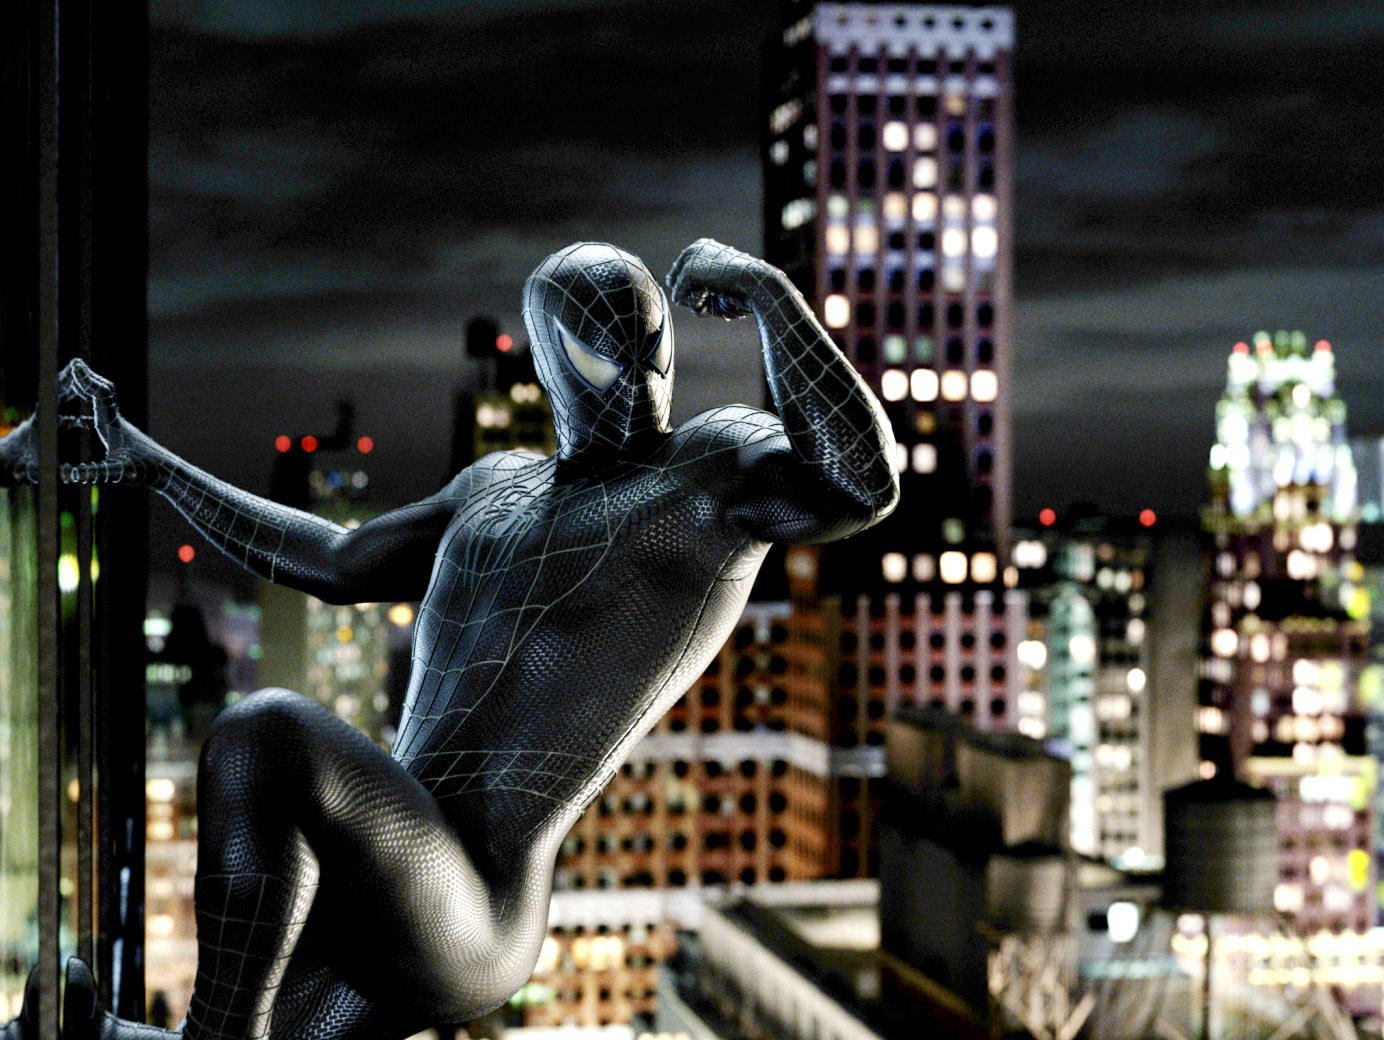 Spider-Man in his black suit